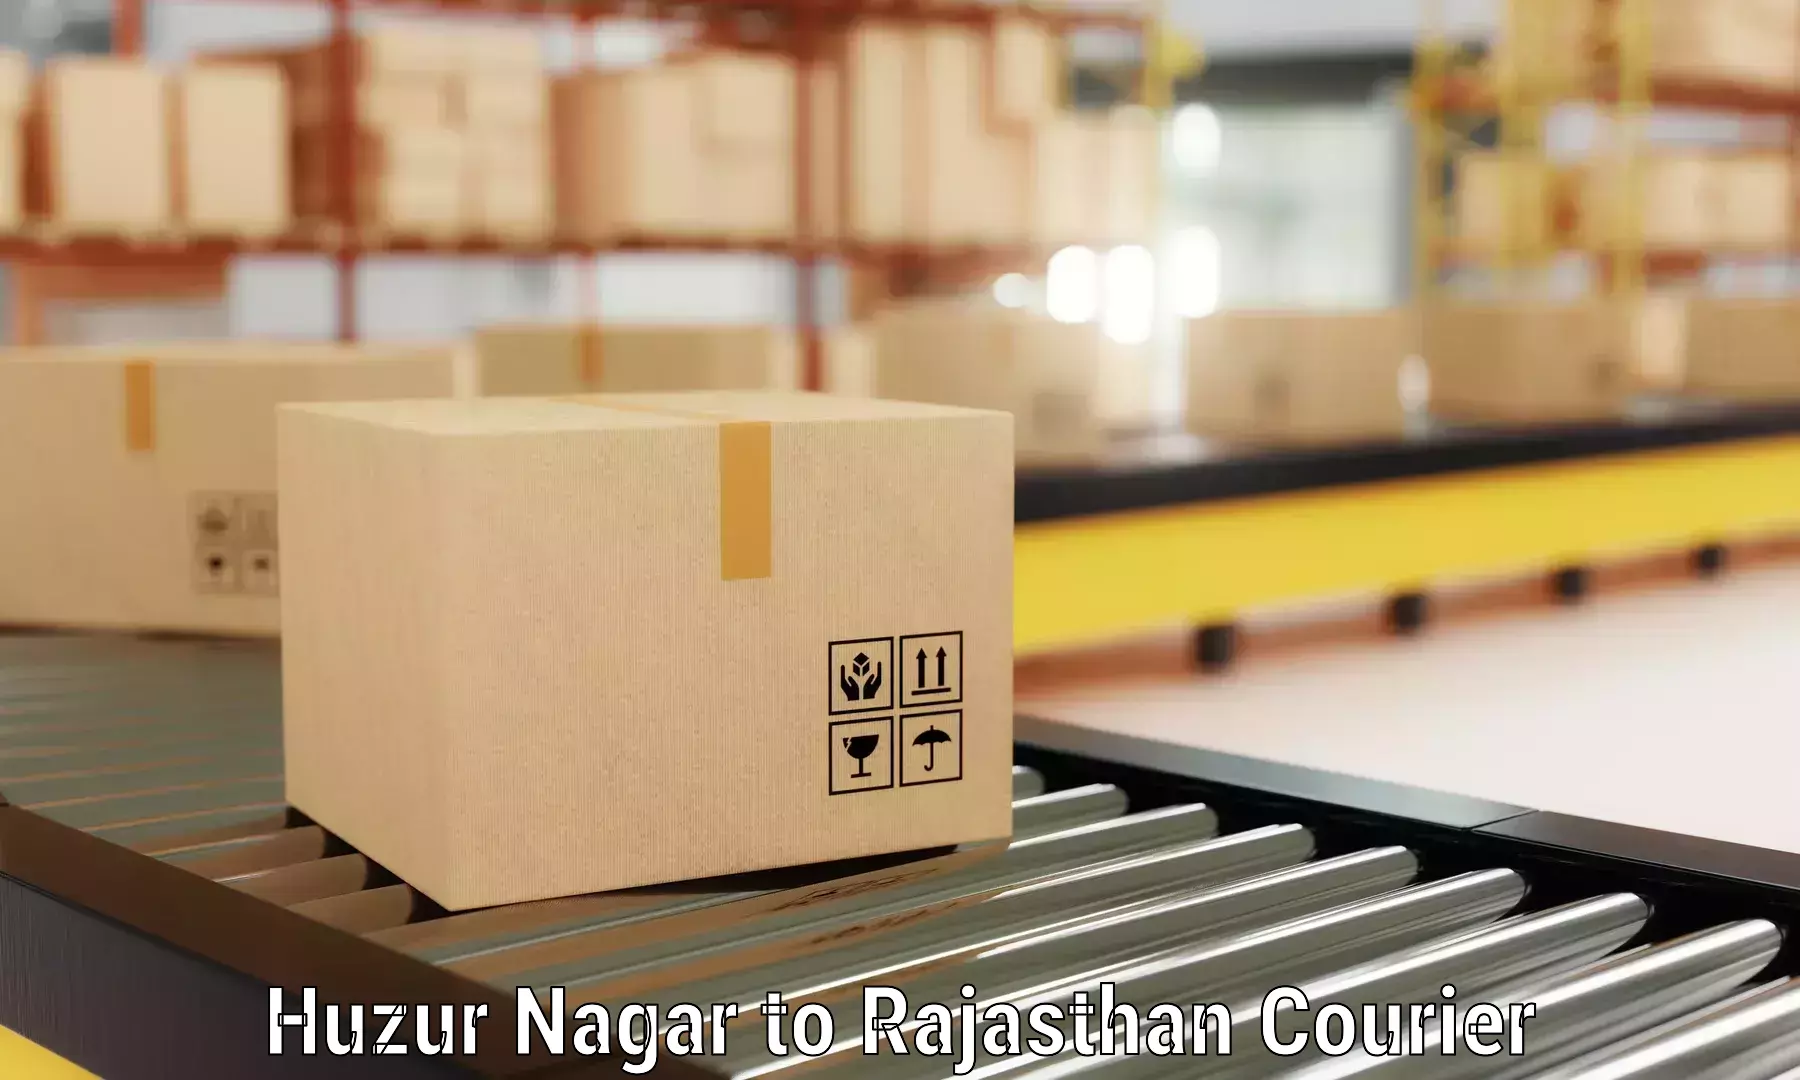 Furniture moving experts Huzur Nagar to Rawatbhata